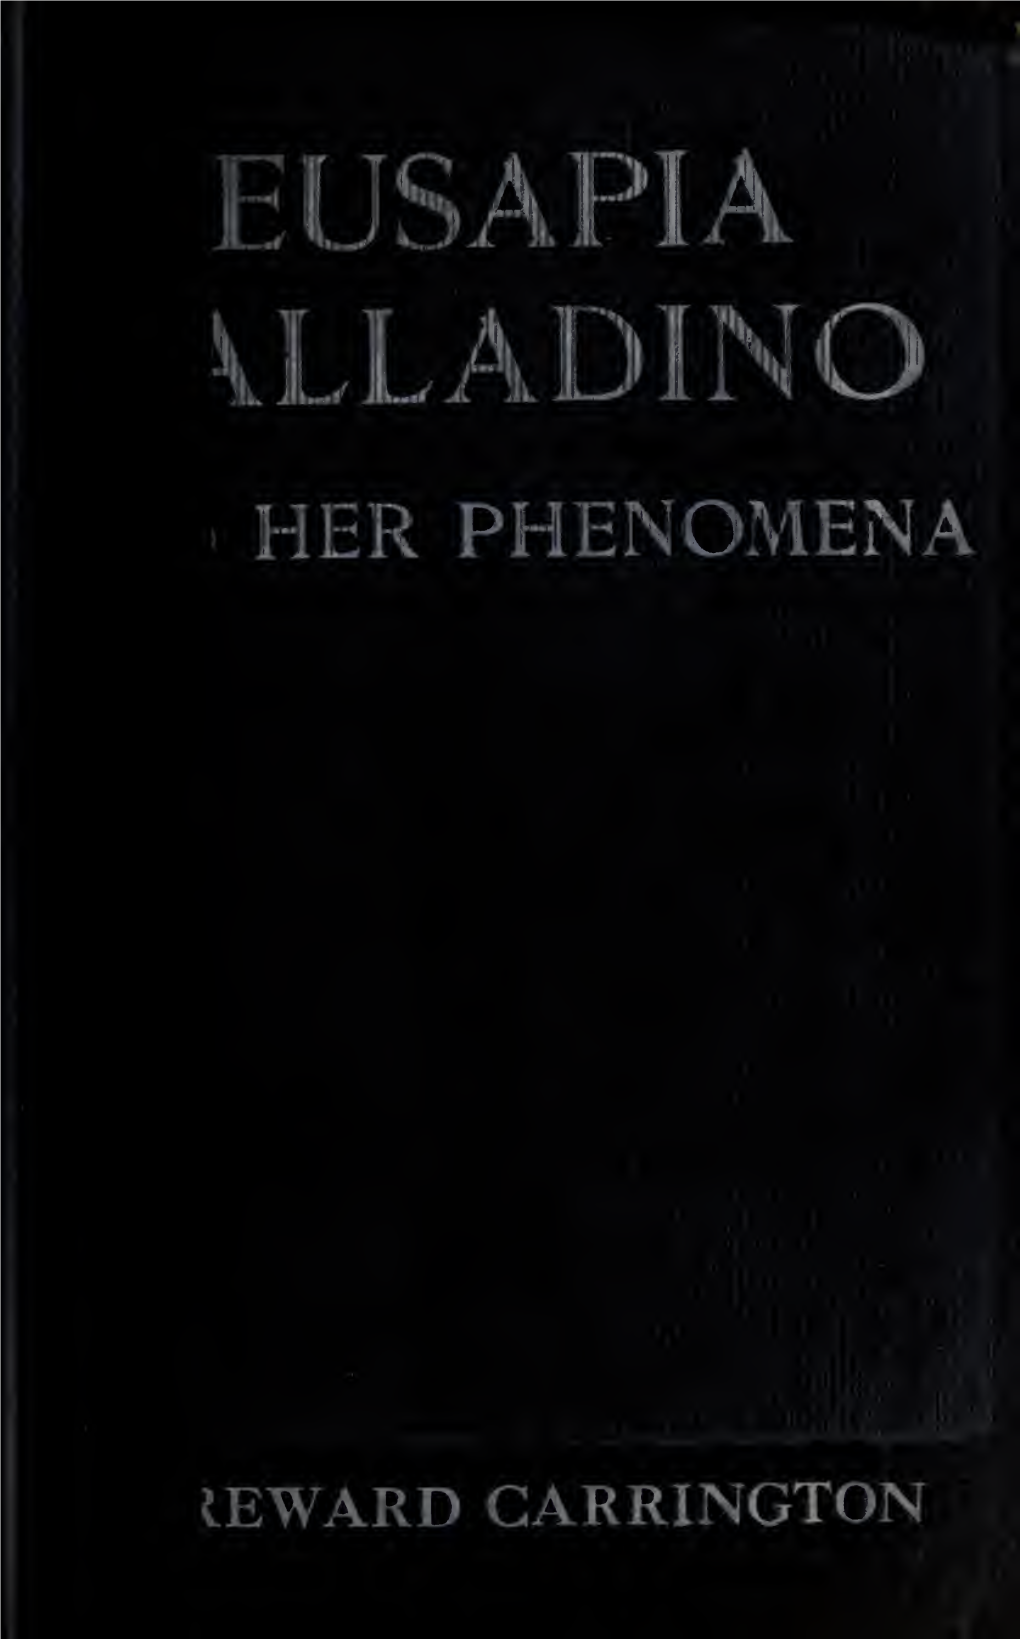 Eusapia Palladino, and Her Phenomena